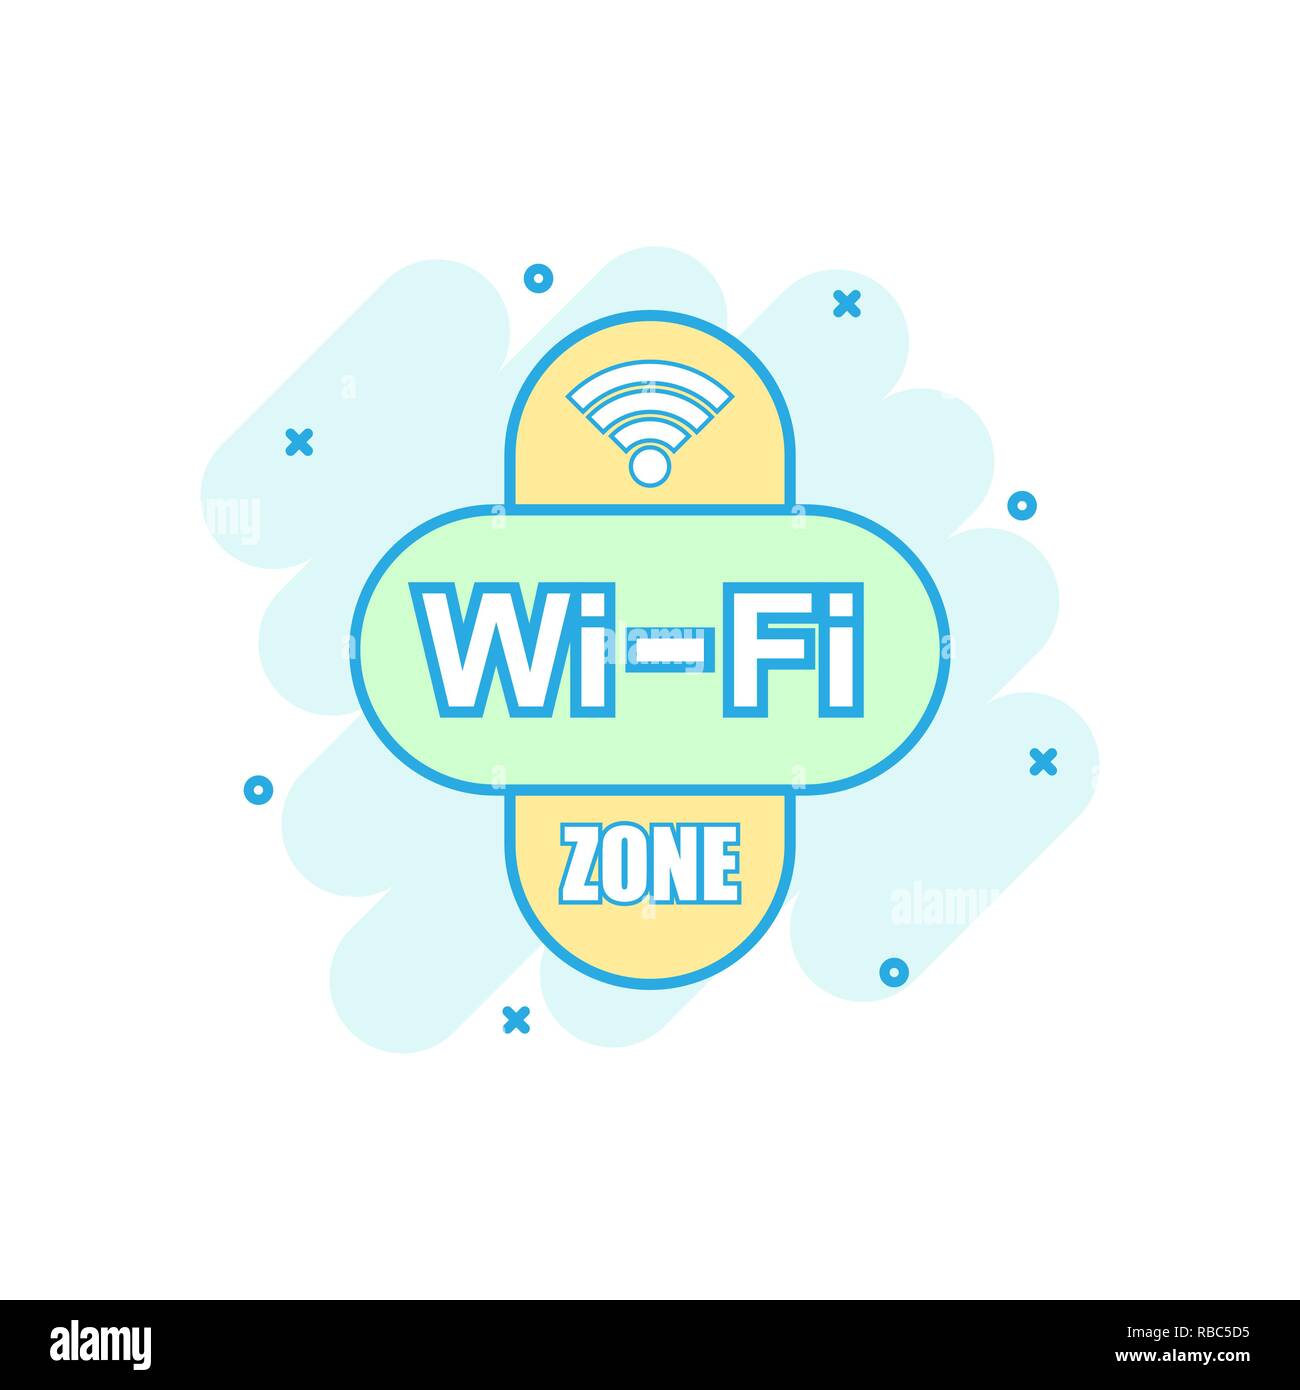 Area Wifi icona in stile fumetto. Wi-fi tecnologia wireless vettore illustrazione cartoon pittogramma. Rete wifi concetto aziendale effetto splash. Illustrazione Vettoriale